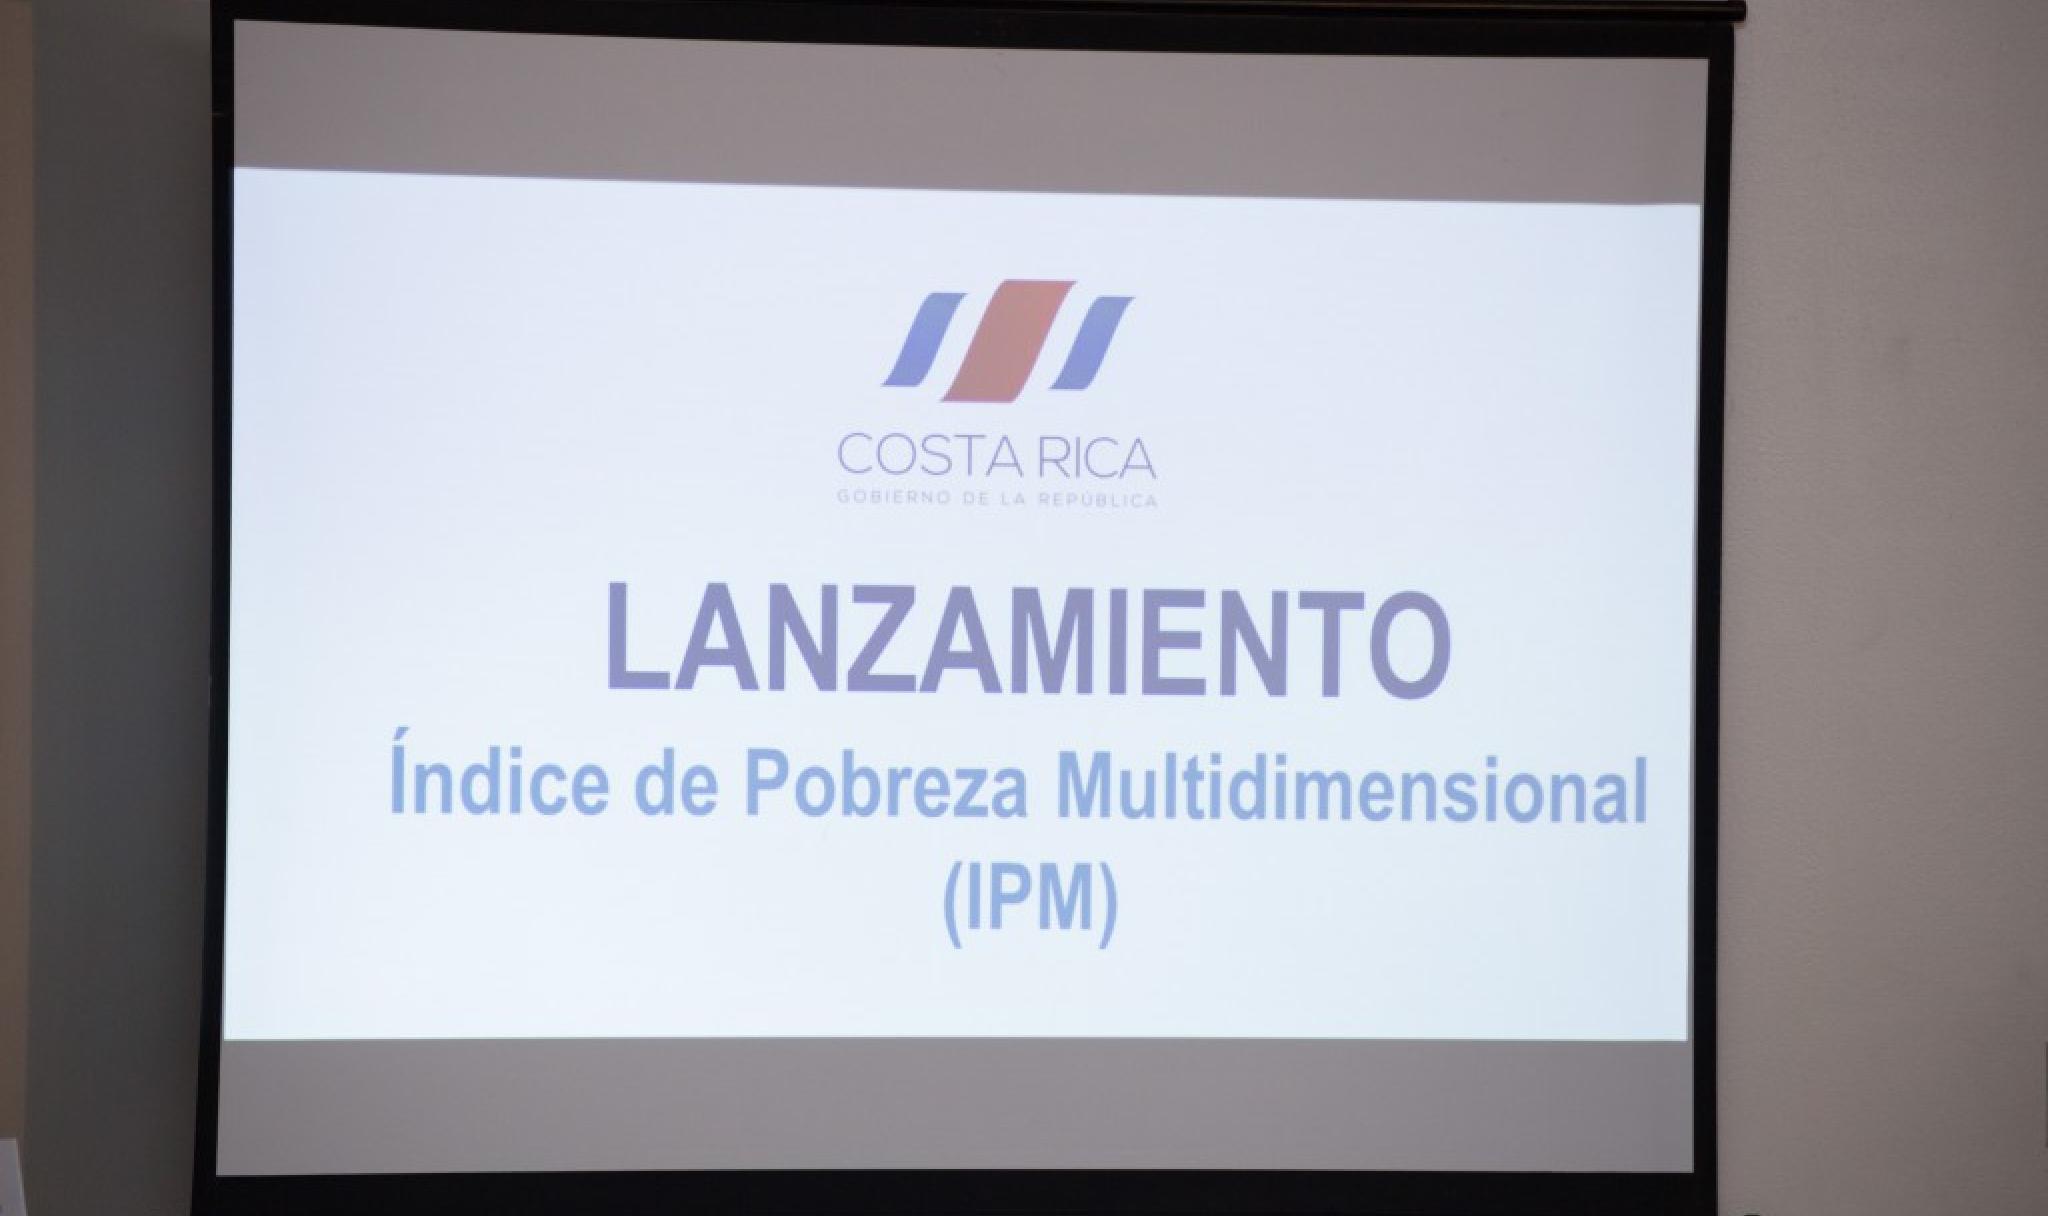 Launch of Costa Rica MPI